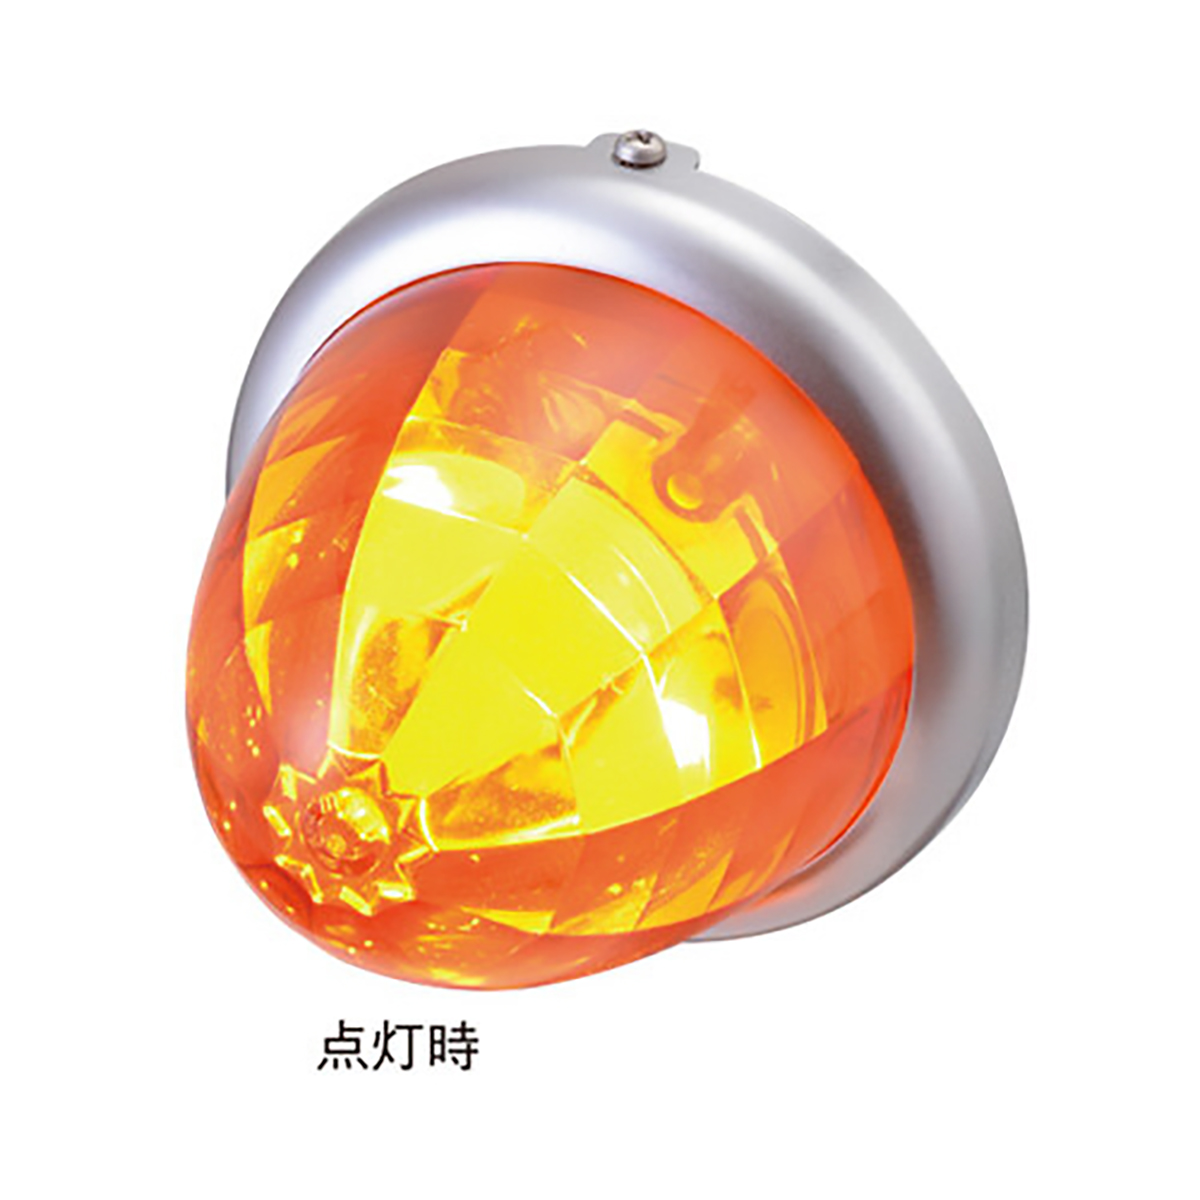 マーカー ランプ SMD LED プラスチックレンズ オレンジ DC12/DC24V 防水